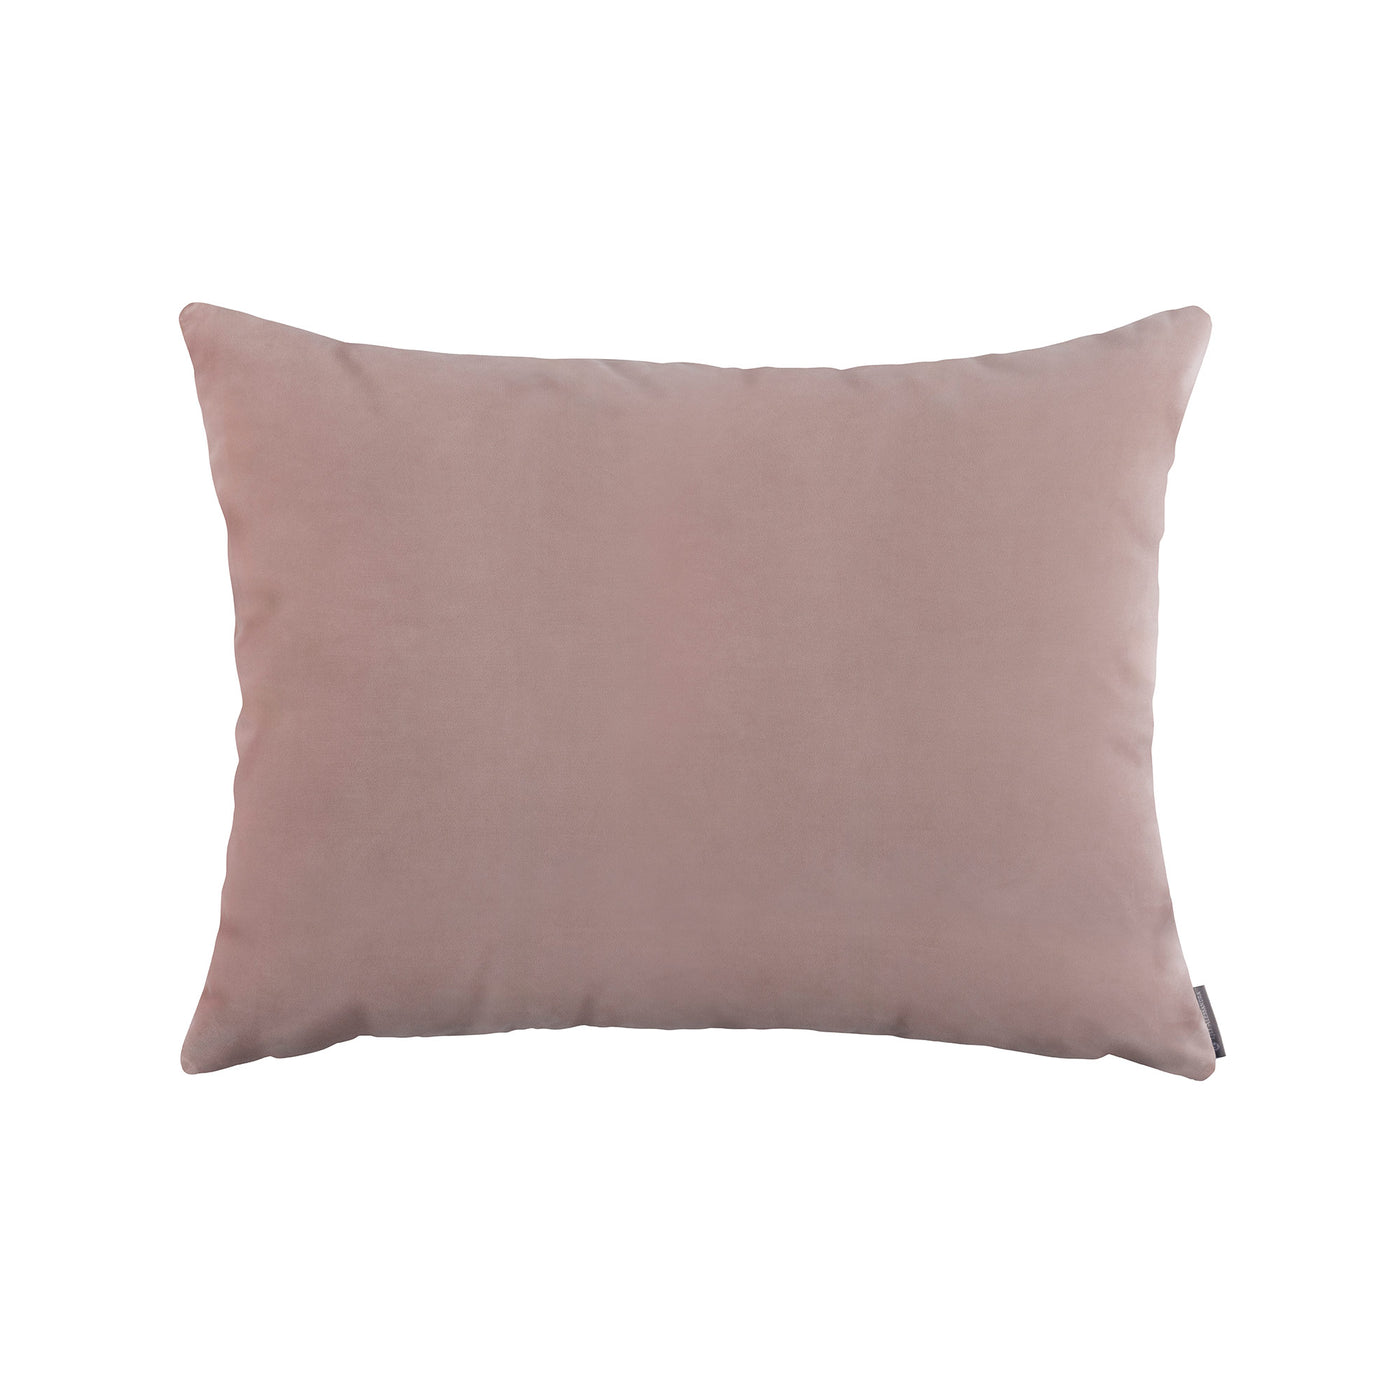 Vivid Cameo Luxe Euro Pillow (27x36)